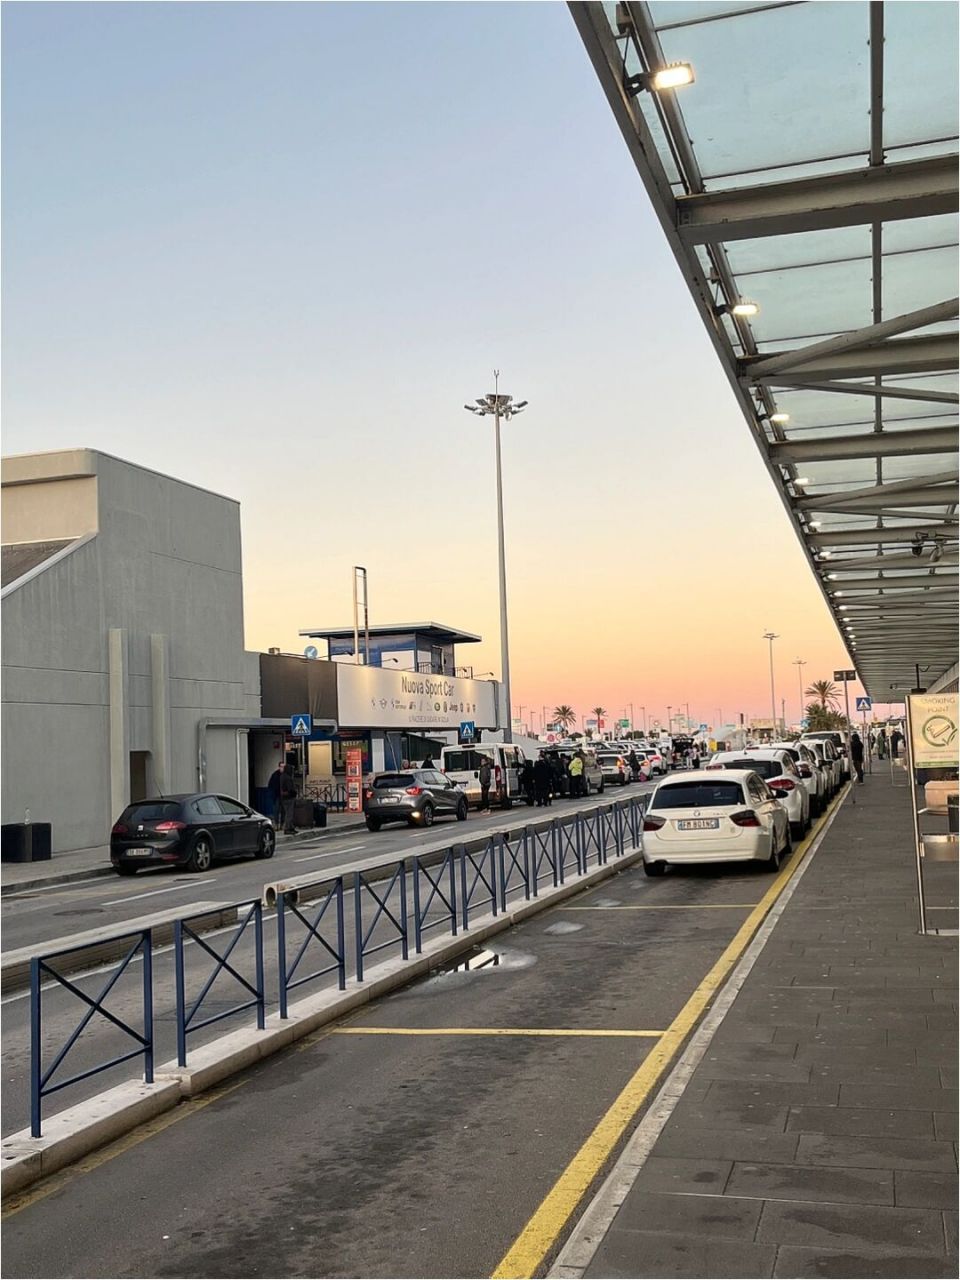 去巴勒莫机场一路夕阳海景真是美绝,照片拍不出那粉蓝粉紫,但是作为